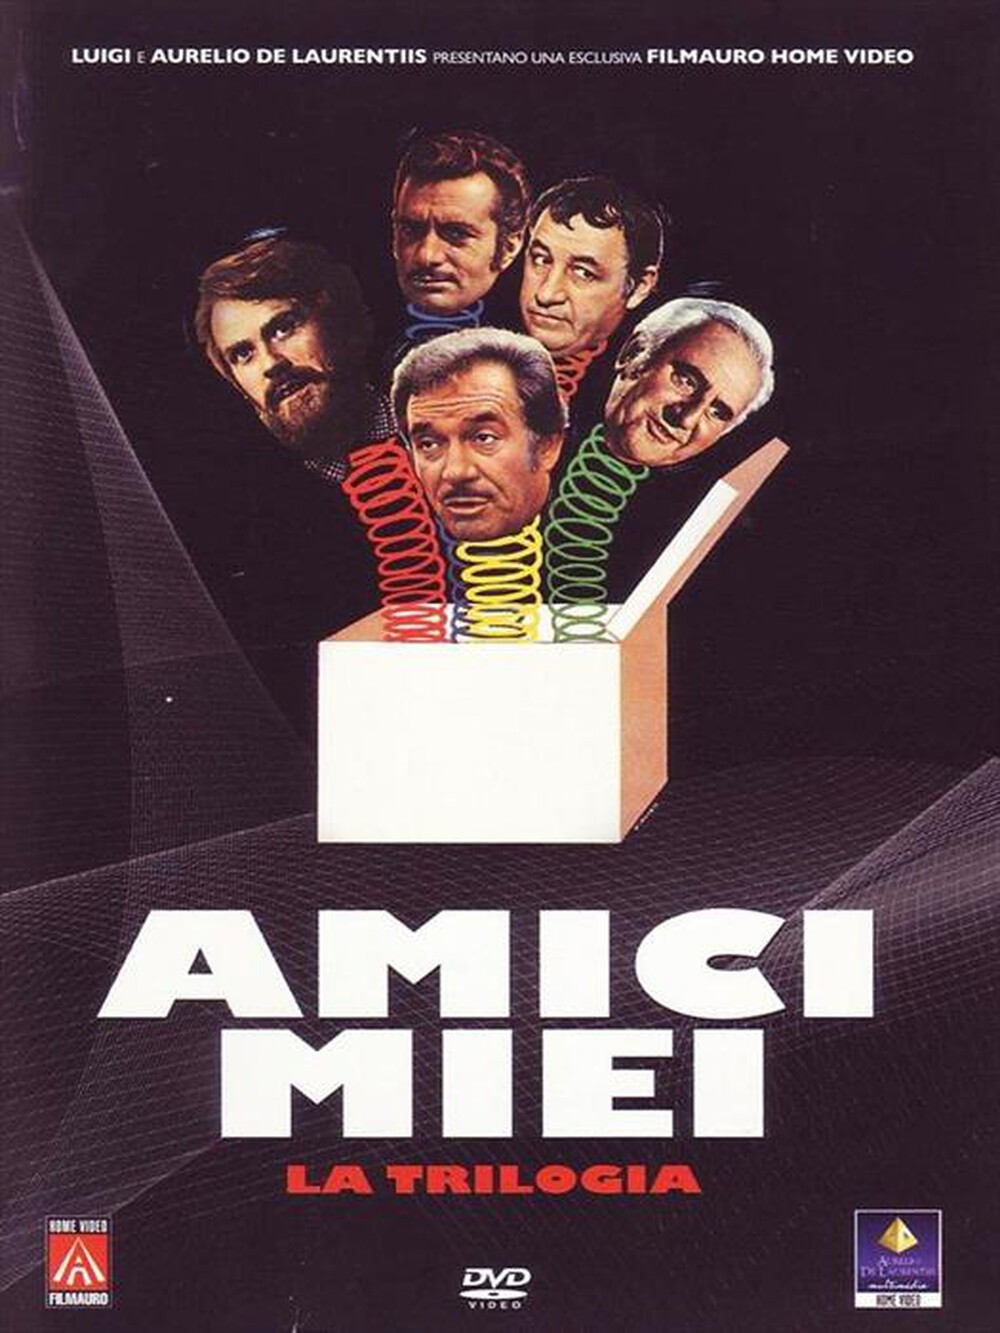 "FILMAURO - Amici Miei - La Trilogia (3 Dvd) - "